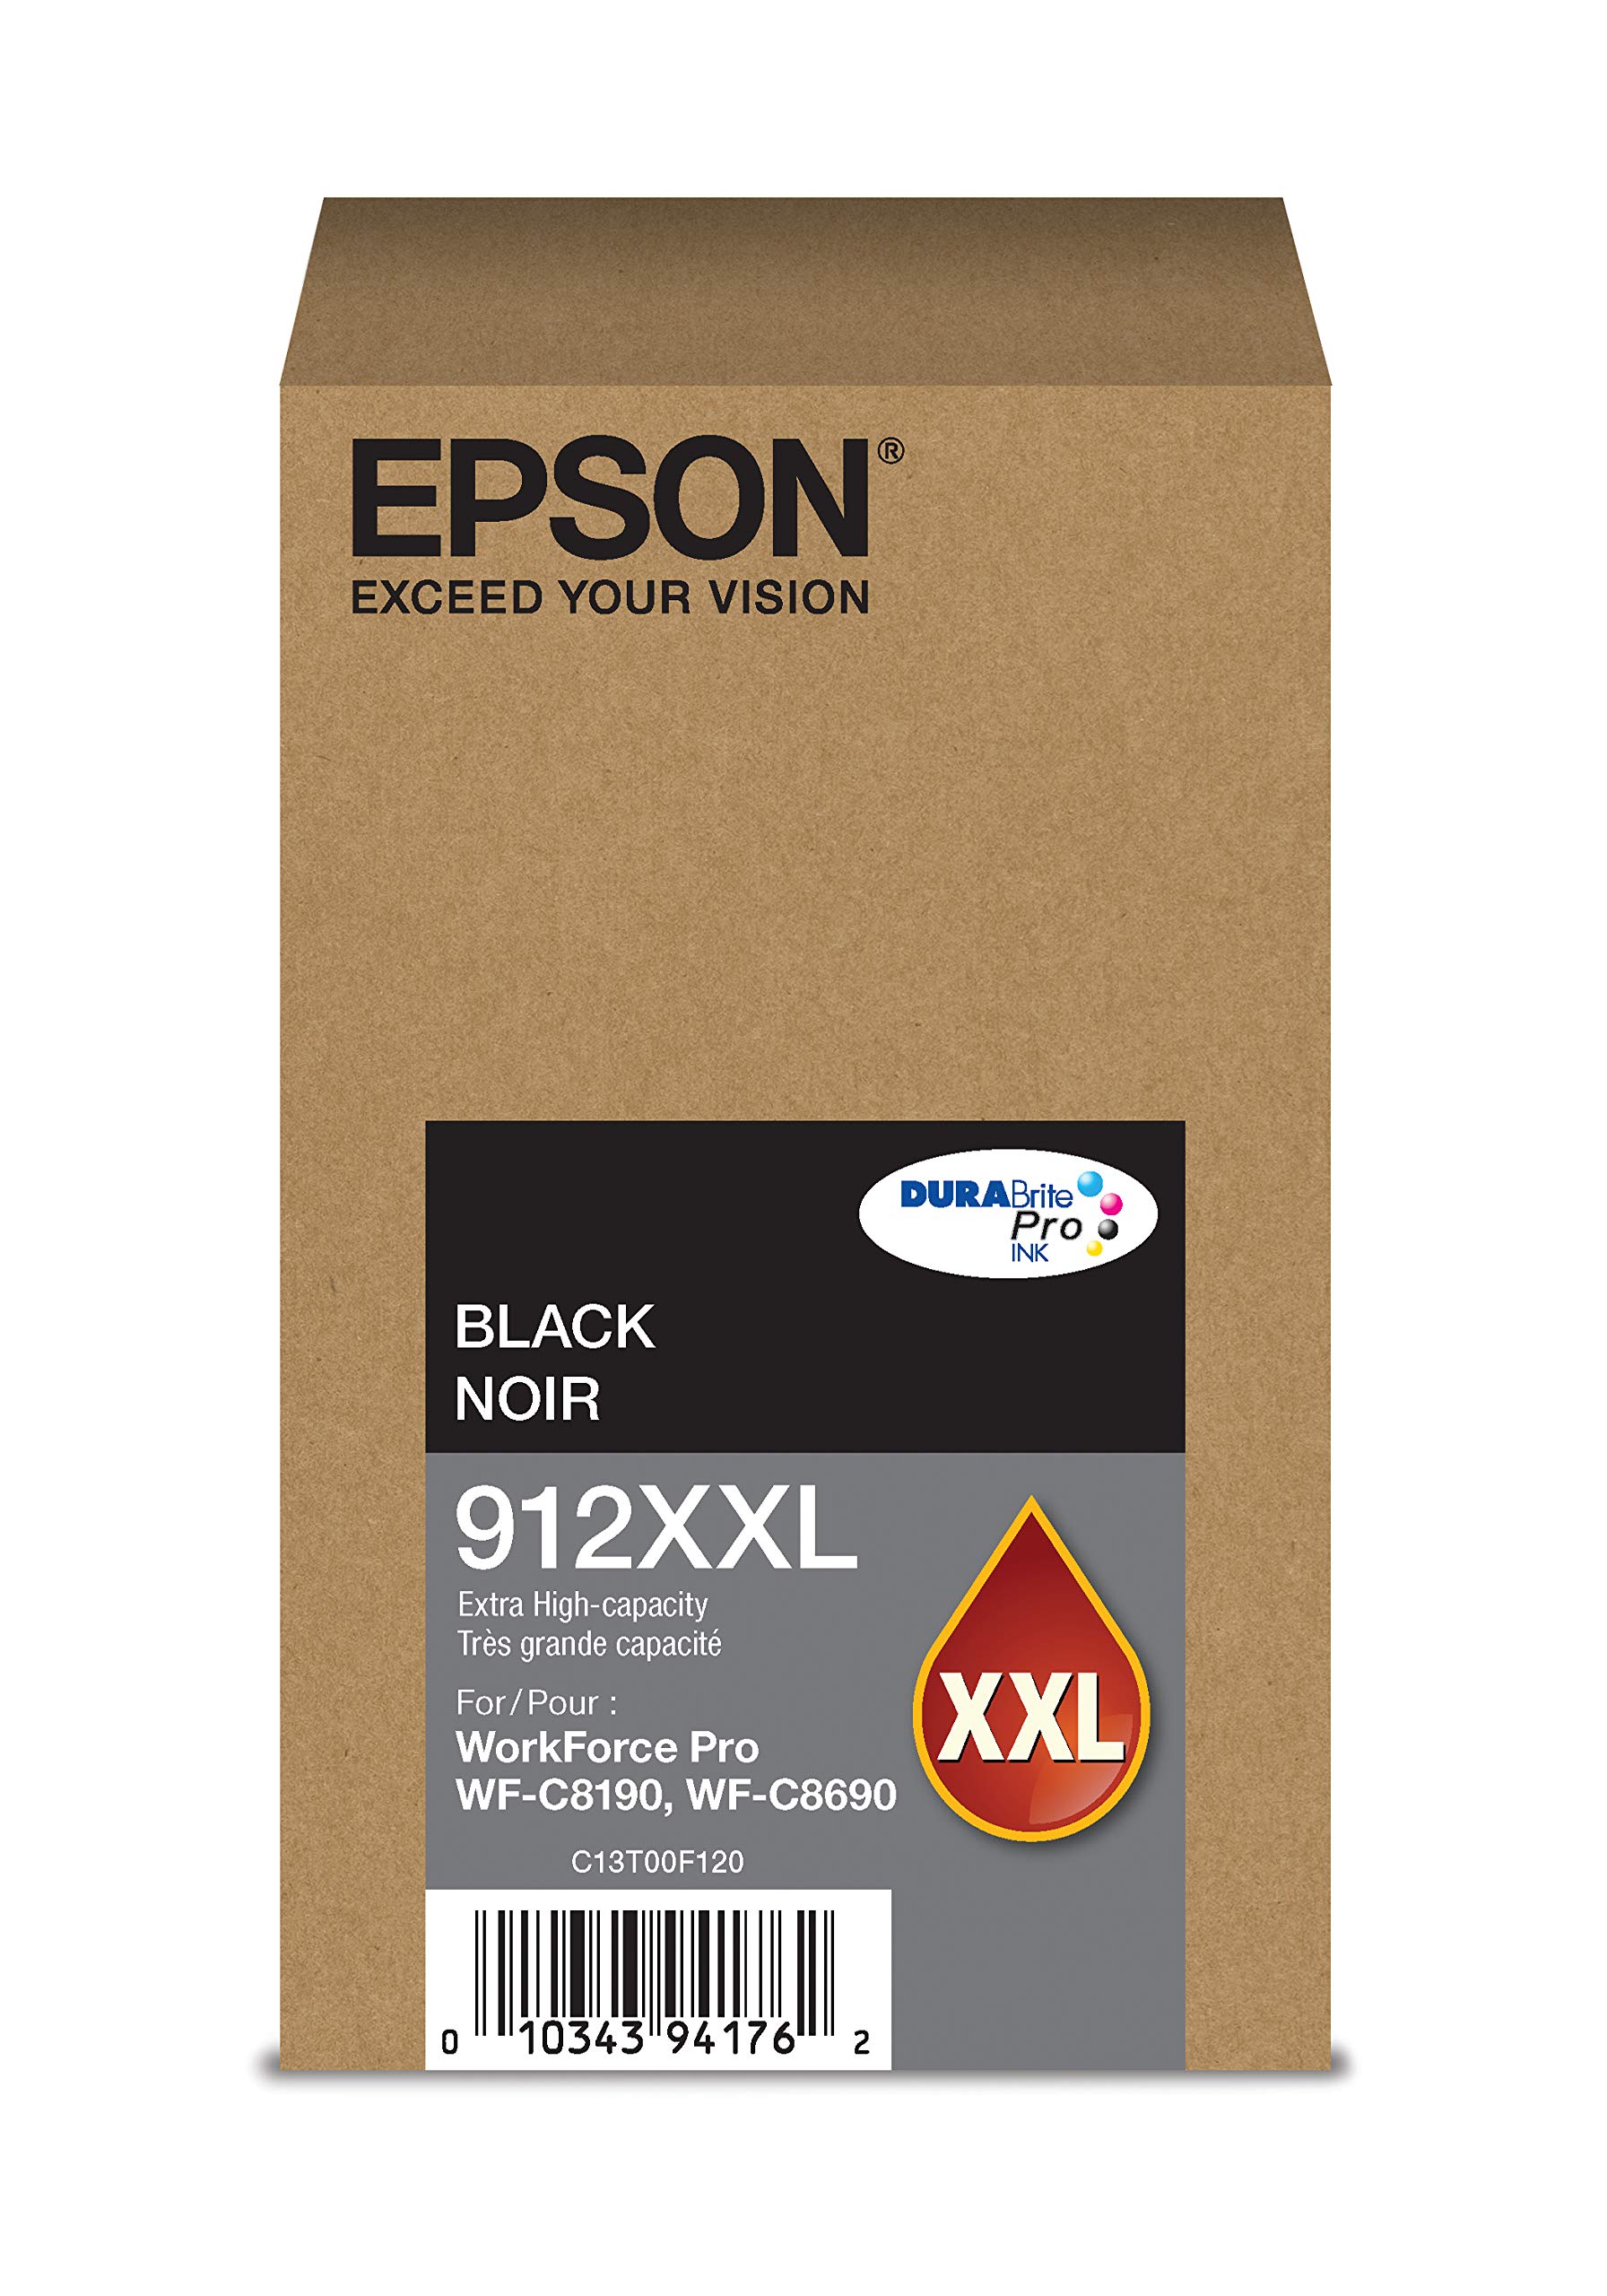 Epson DURABrite Pro T912XXL120 -Cartucho de tinta - Negro de capacidad extra alta